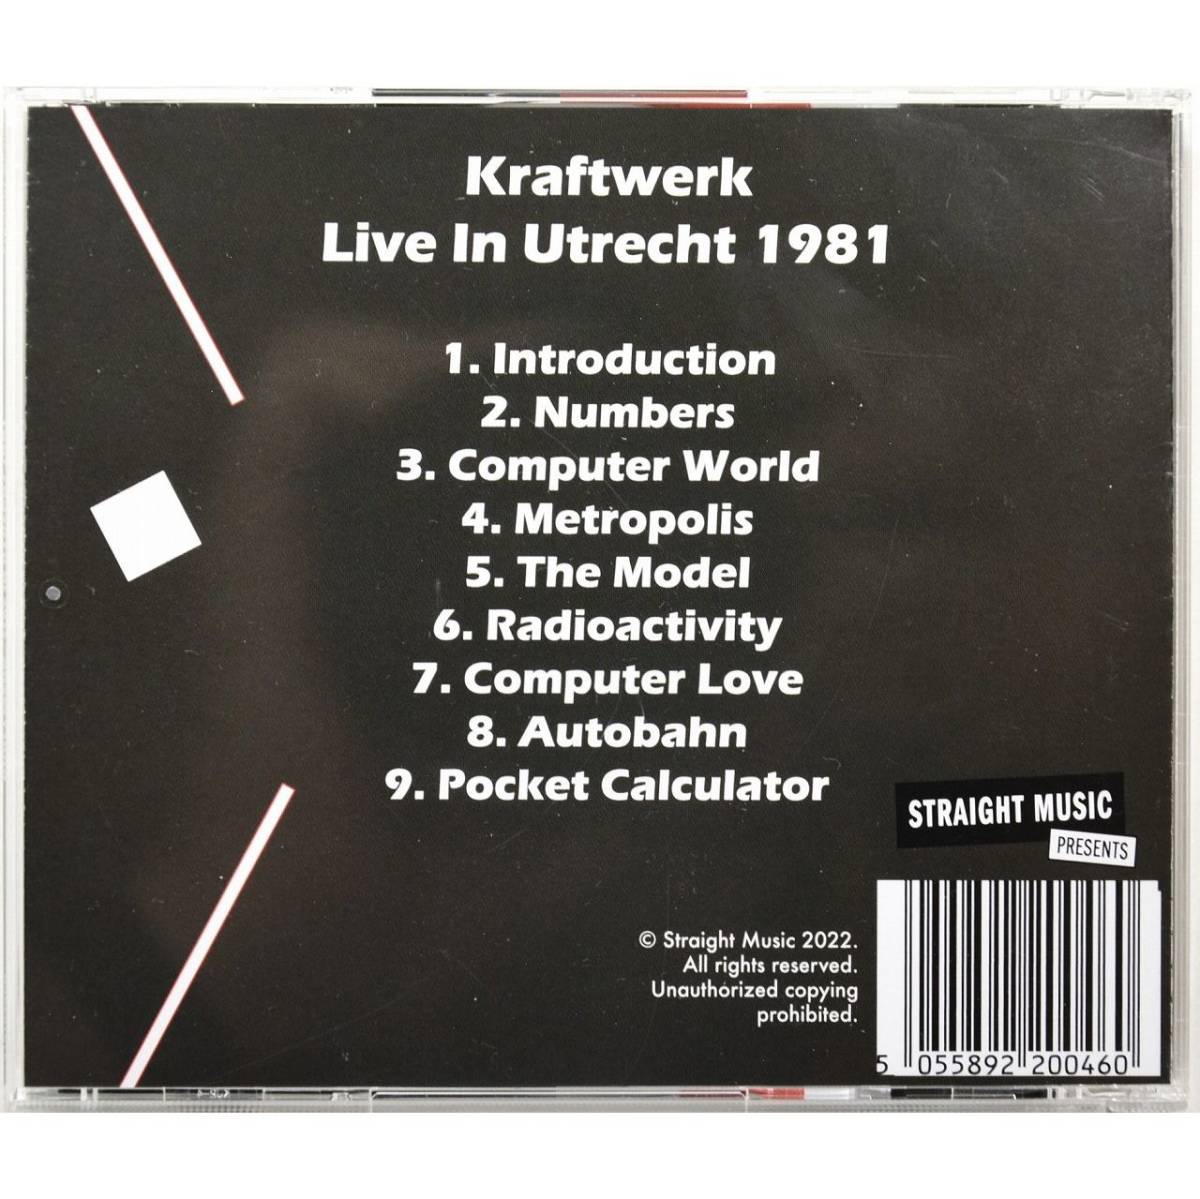 [Straight-music запись ]Kraftwerk / Live in Utrecht 1981 * craft Work / жить * in *yutorehito1981 * Computer World Tour1981*